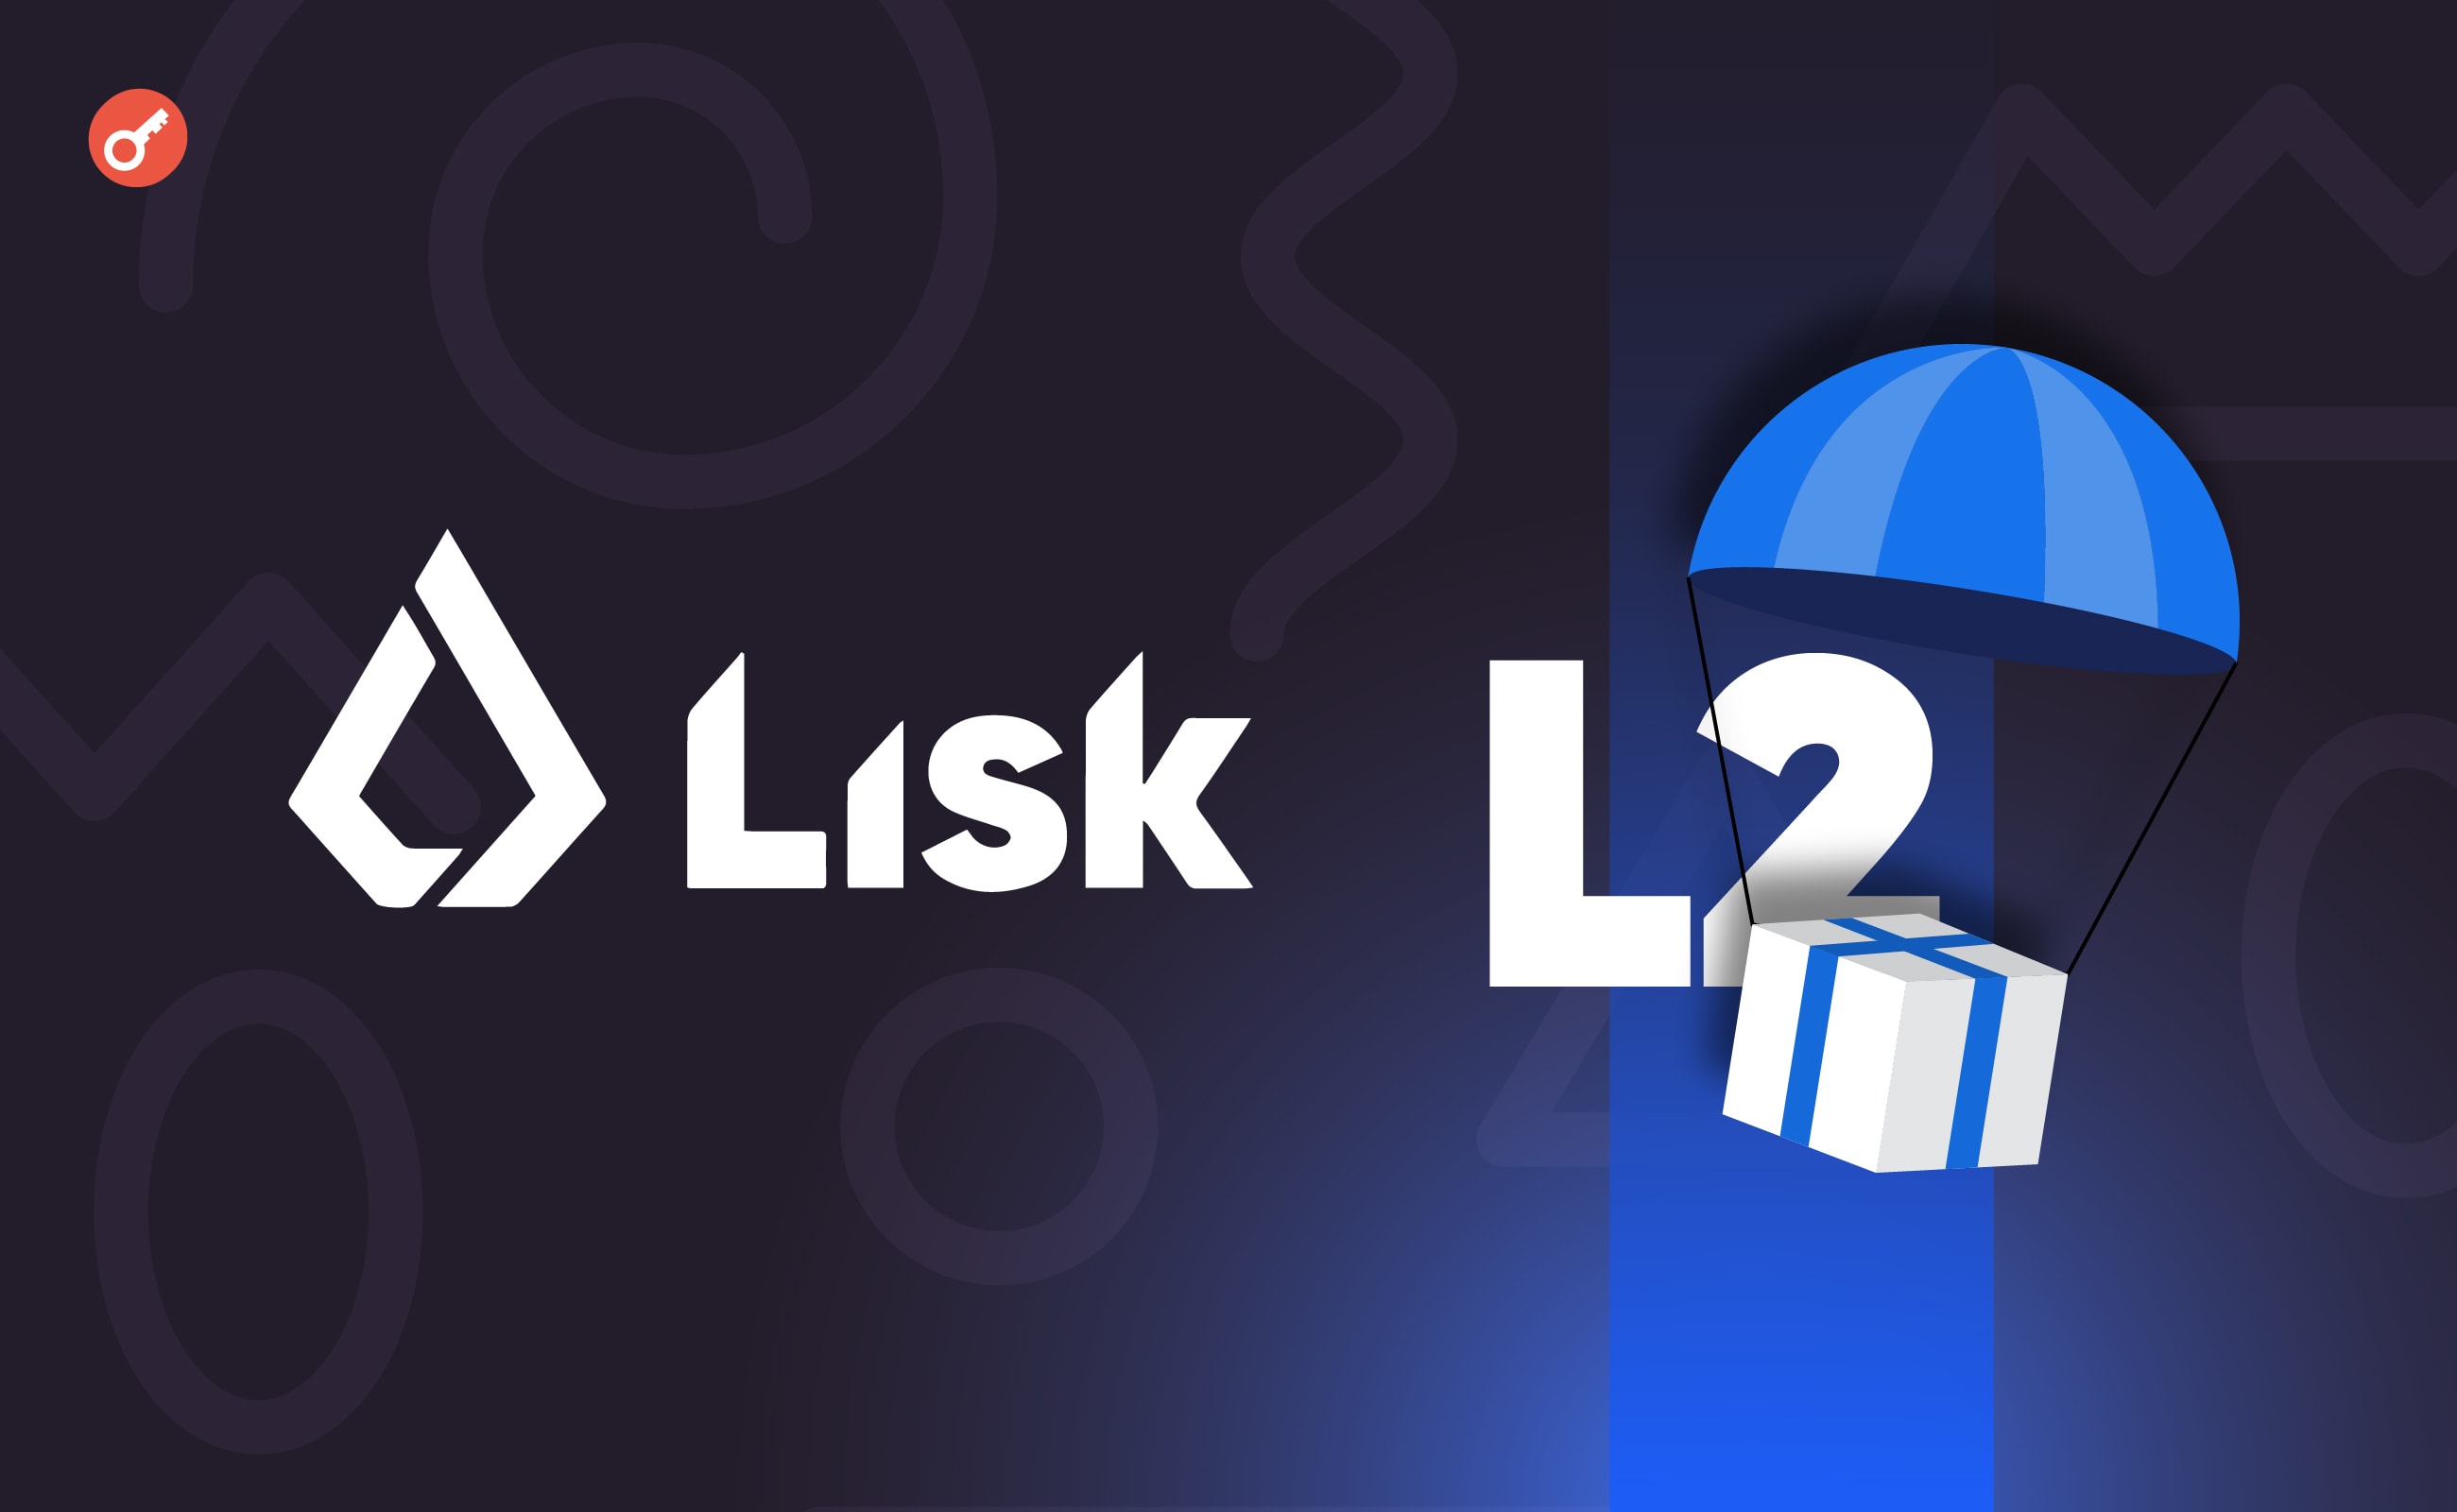 Команда Lisk поделилась планами о запуске L2-сети и проведении аирдропа. Заглавный коллаж новости.